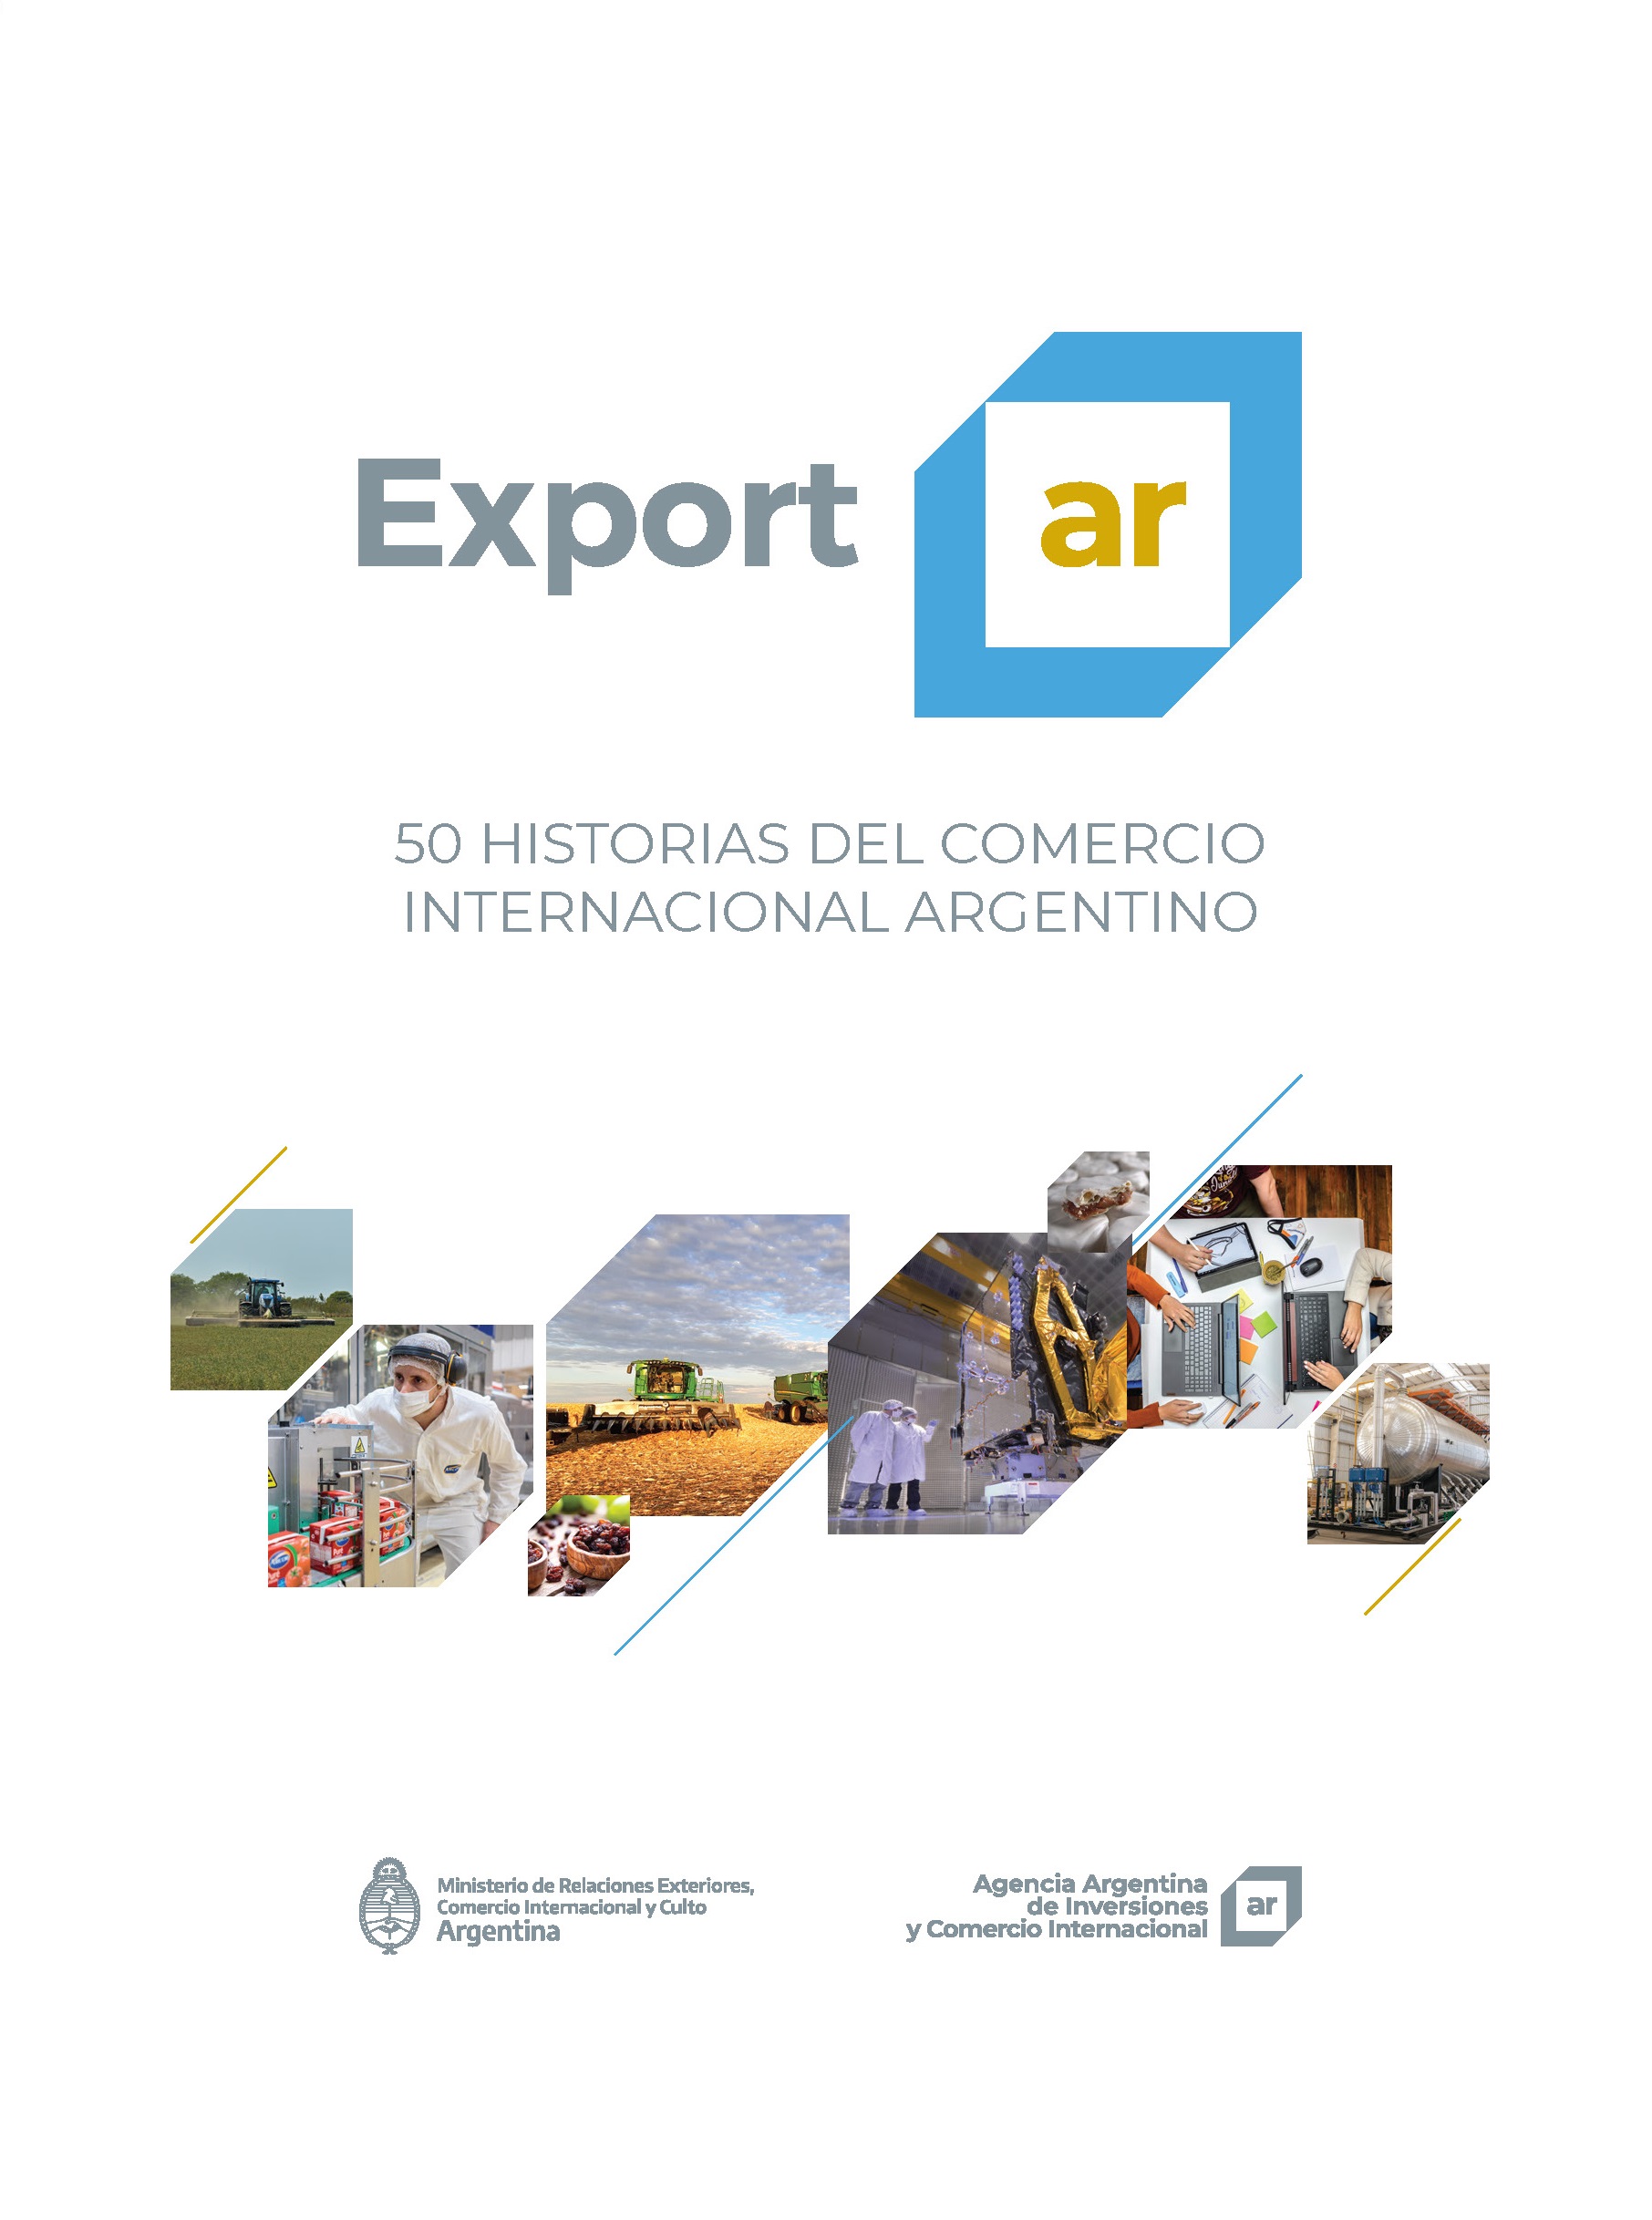 http://www.invest.org.ar/images/publicaciones/Exportar. 50 historias del comercio internacional argentino